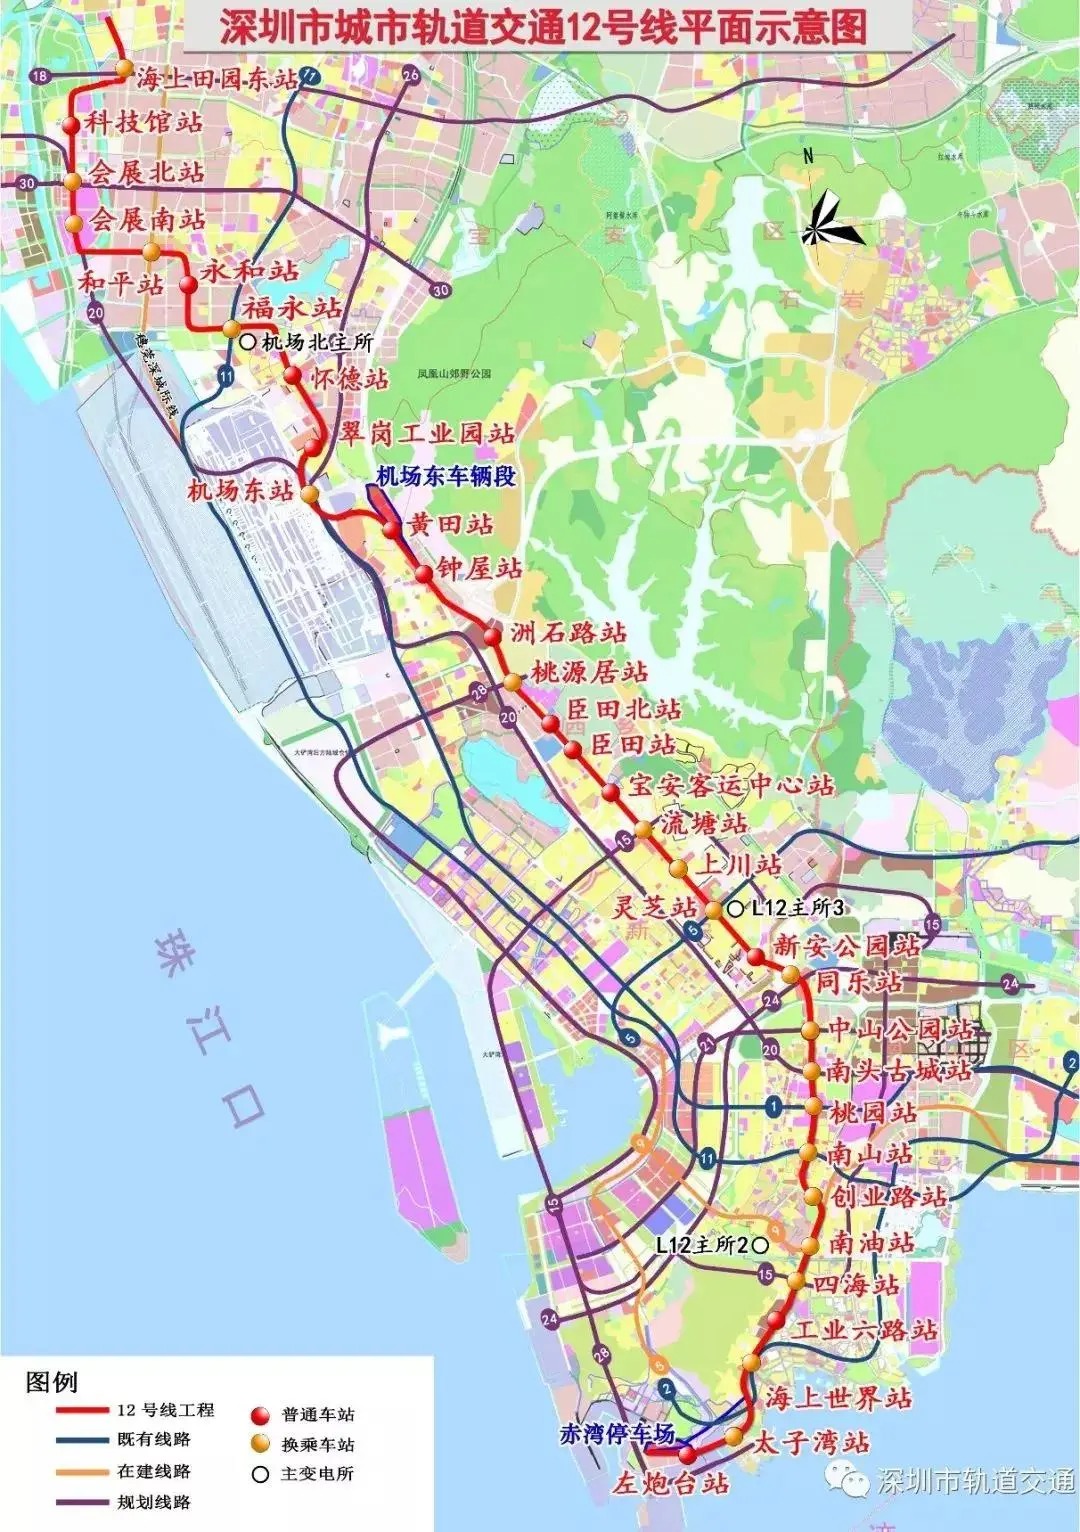 据悉,地铁12号线起自左炮台站,终至海上田园东站;线路全长约40